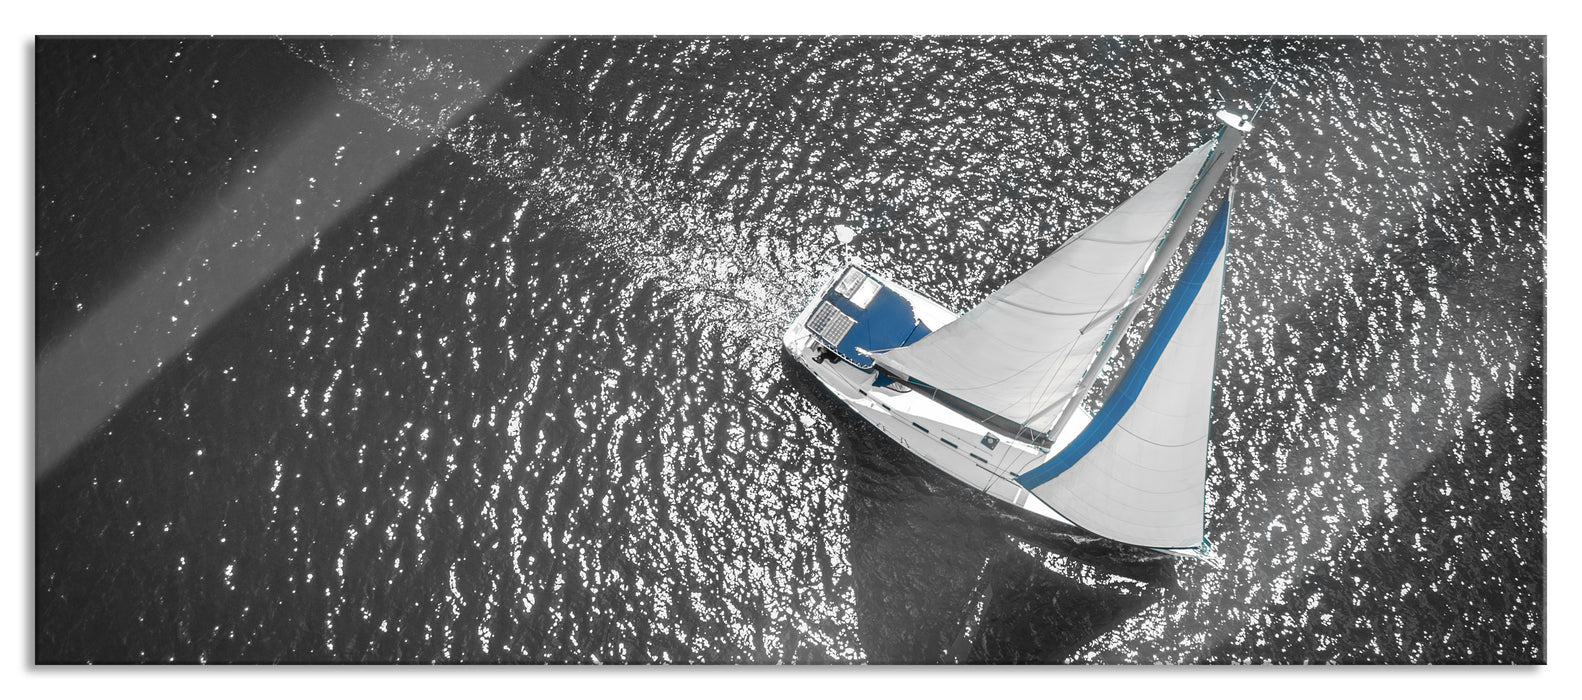 Einsames Segelboot auf dem Meer B&W Detail, Glasbild Panorama